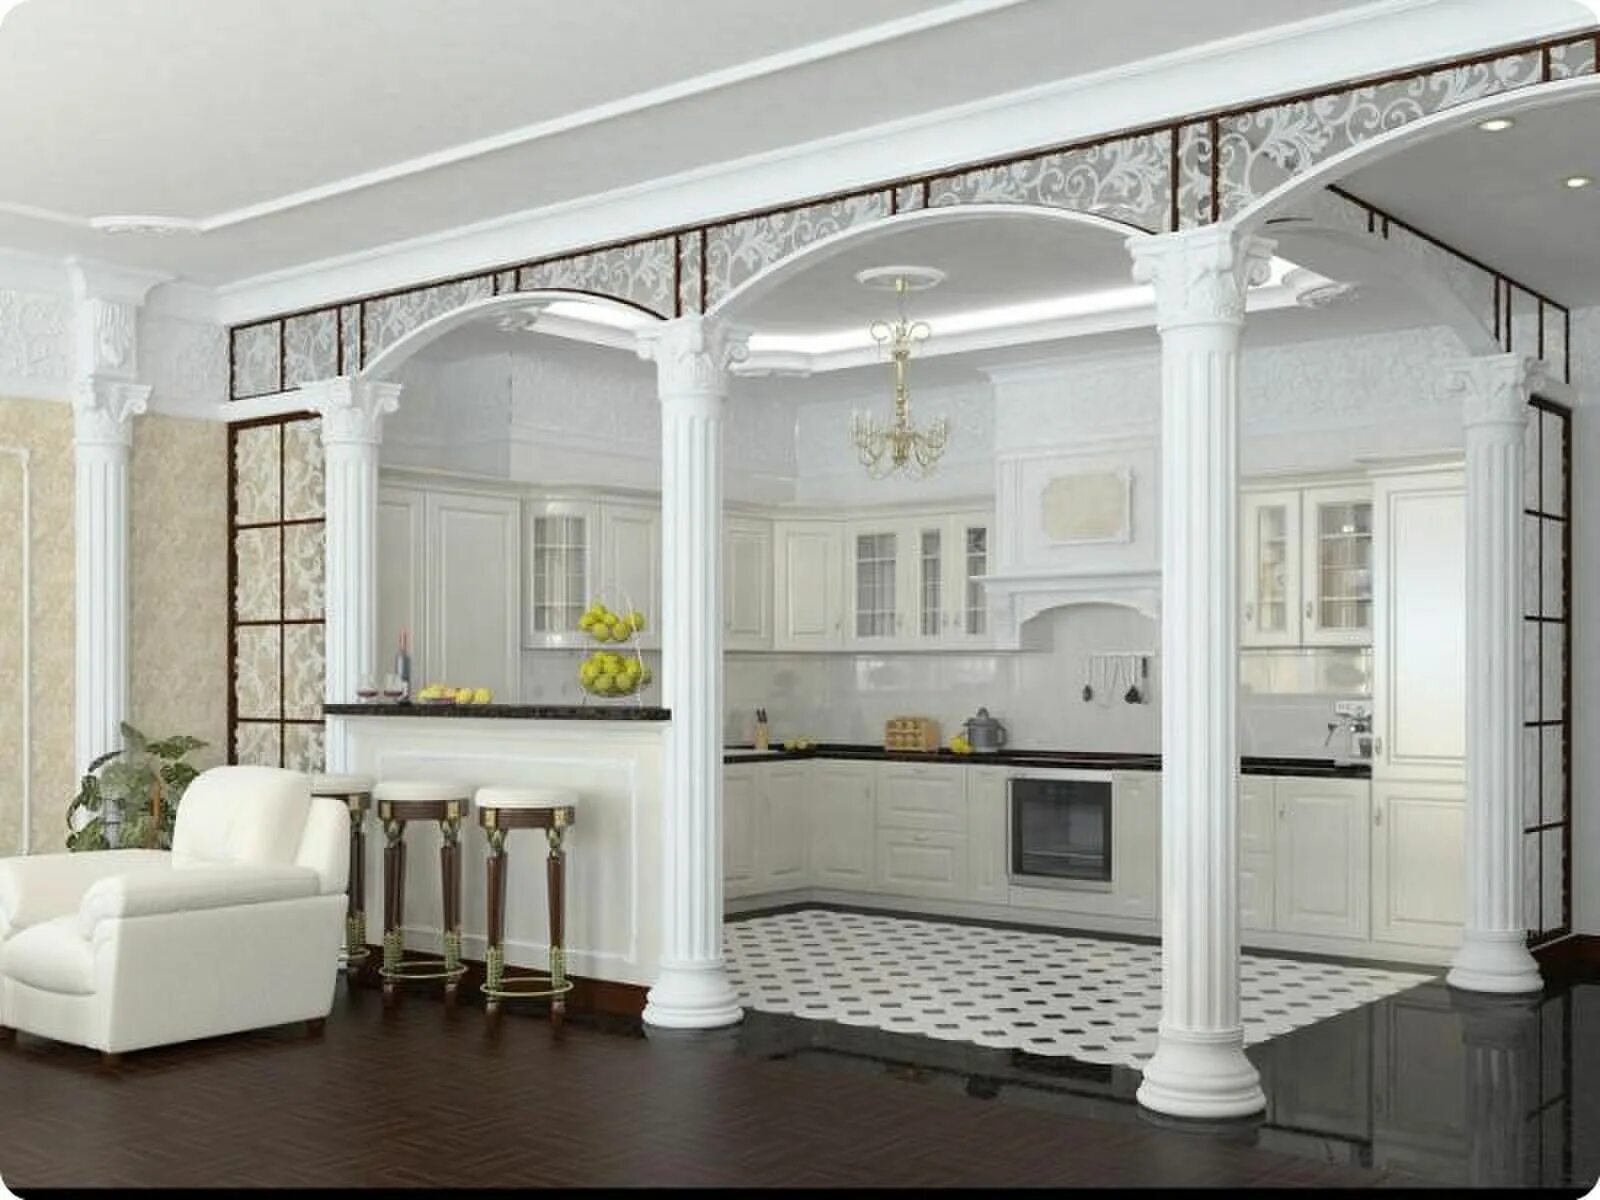 Салон арка. Колонны в интерьере. Колонны в интерьере кухни. Кухня-гостиная с колоннами. Гостиная с колоннами.